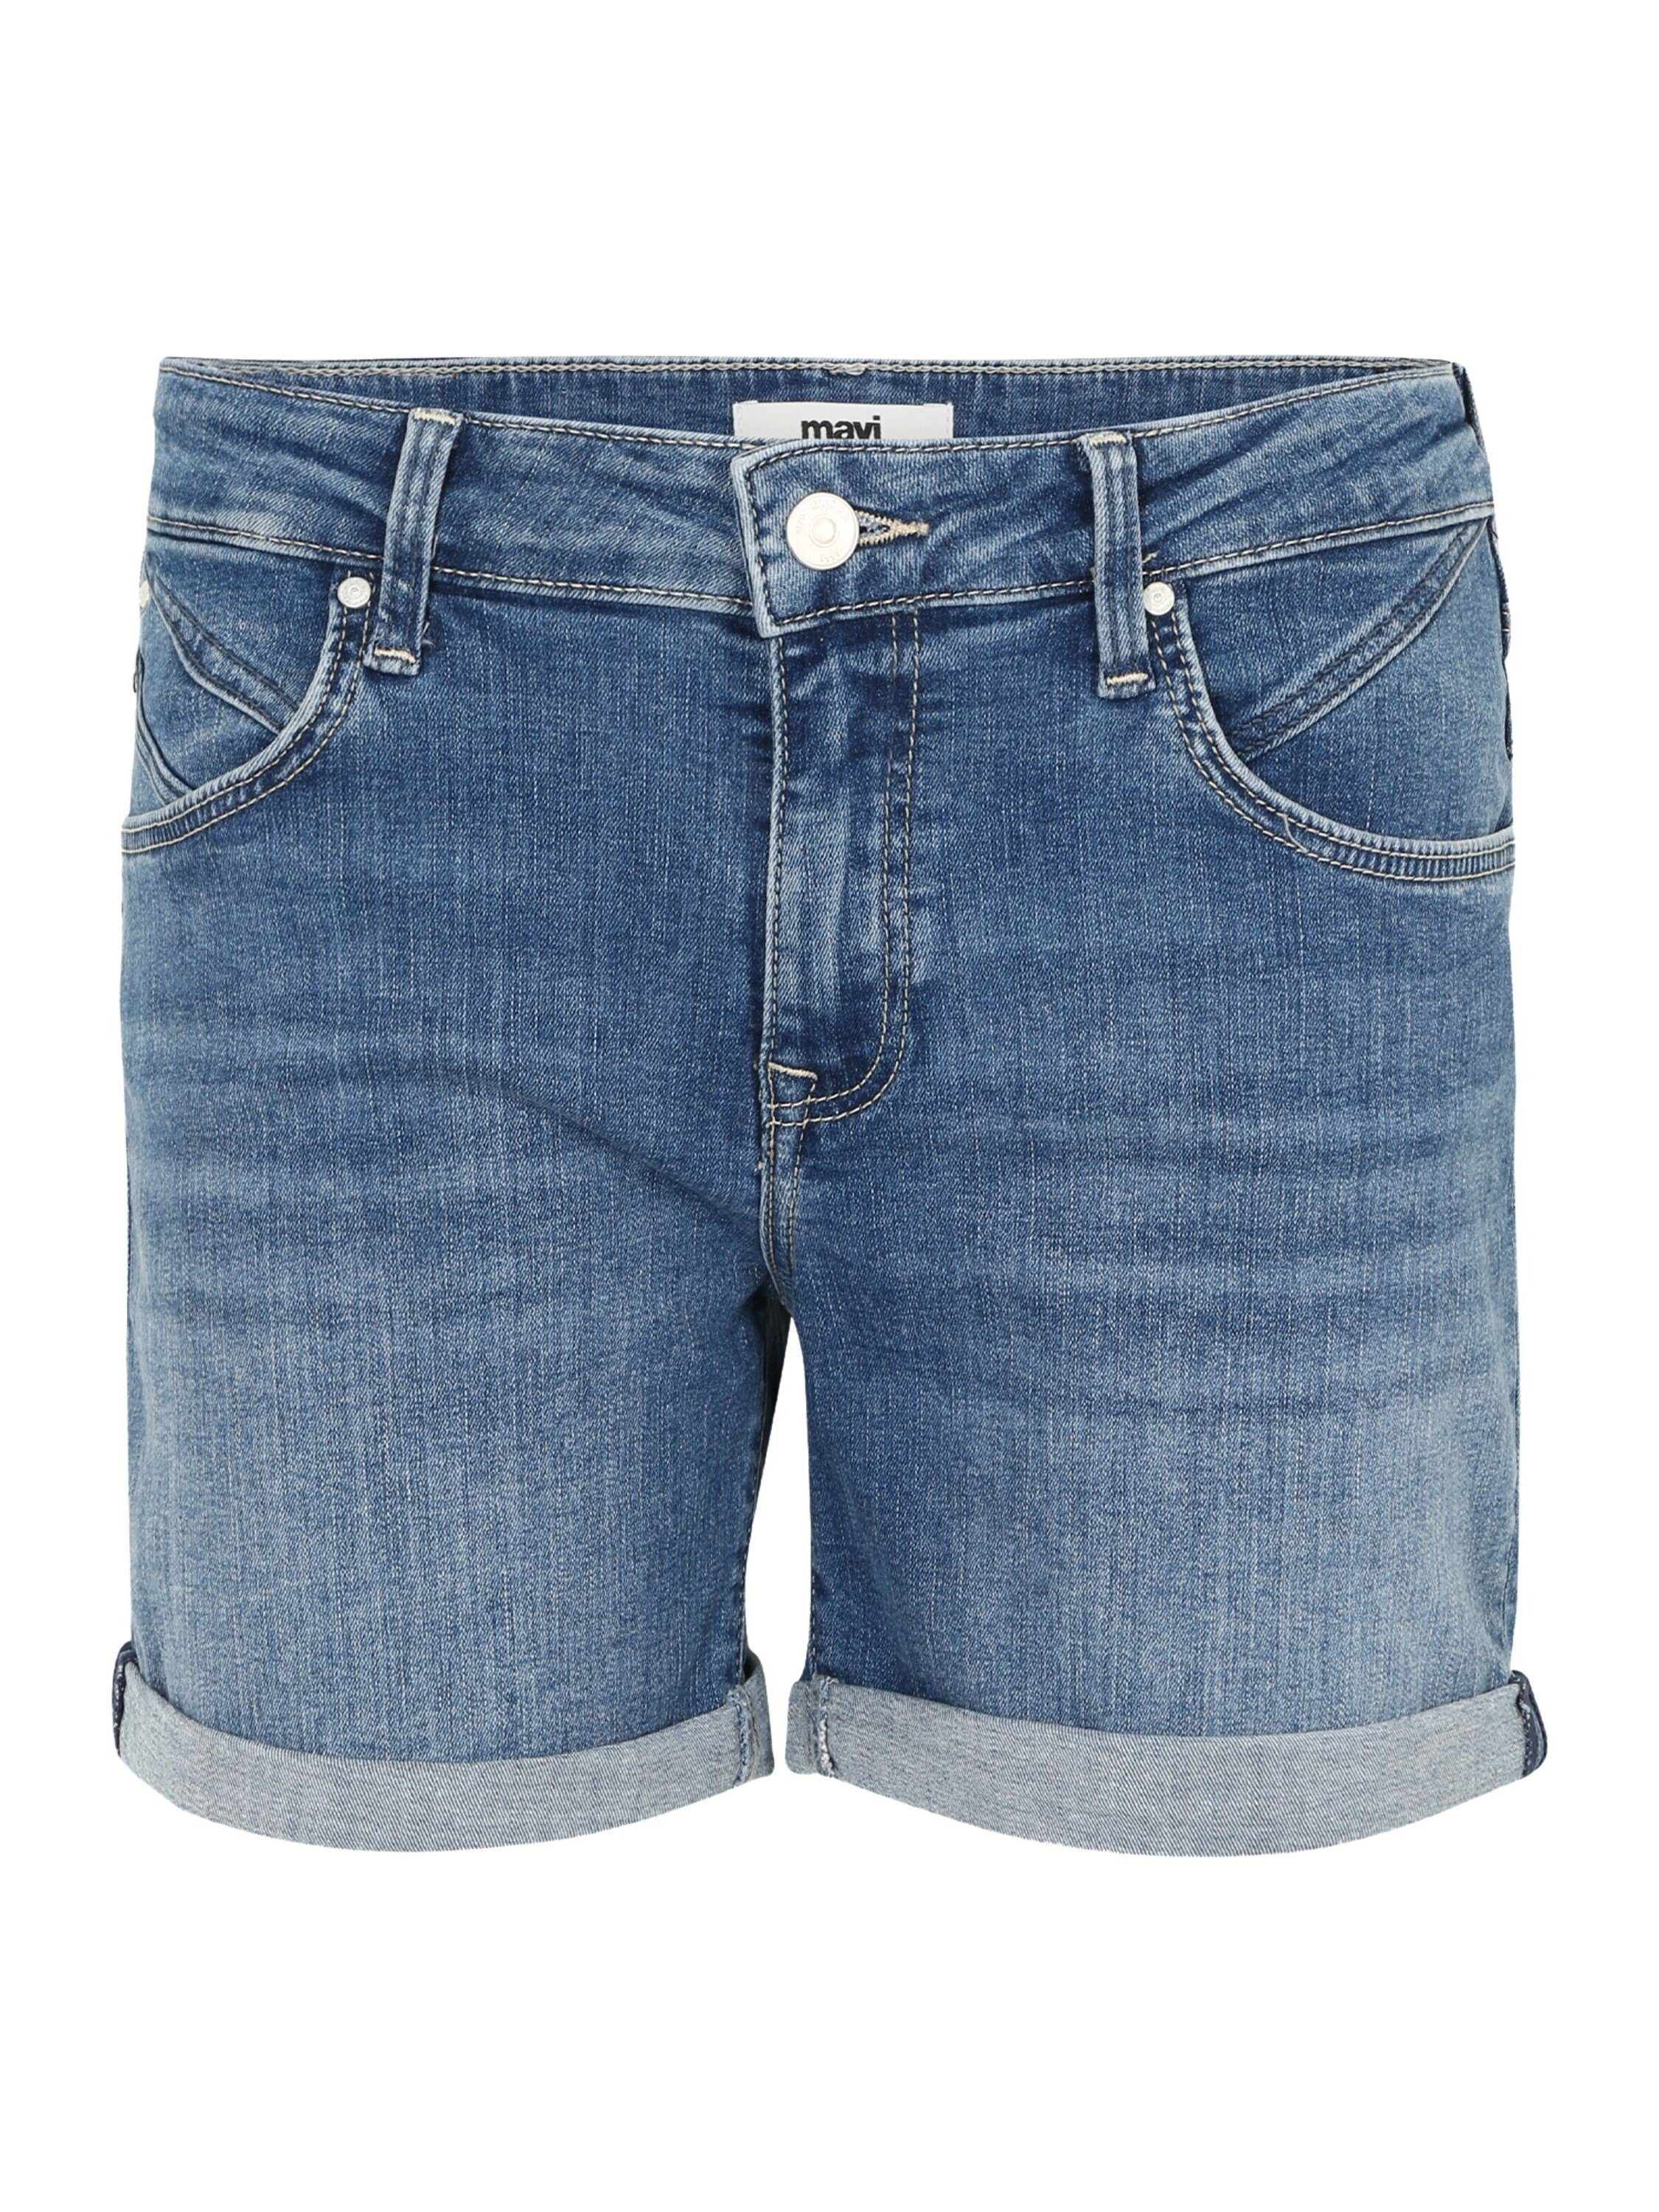 Mavi Jeans Shorts für Damen online kaufen | OTTO